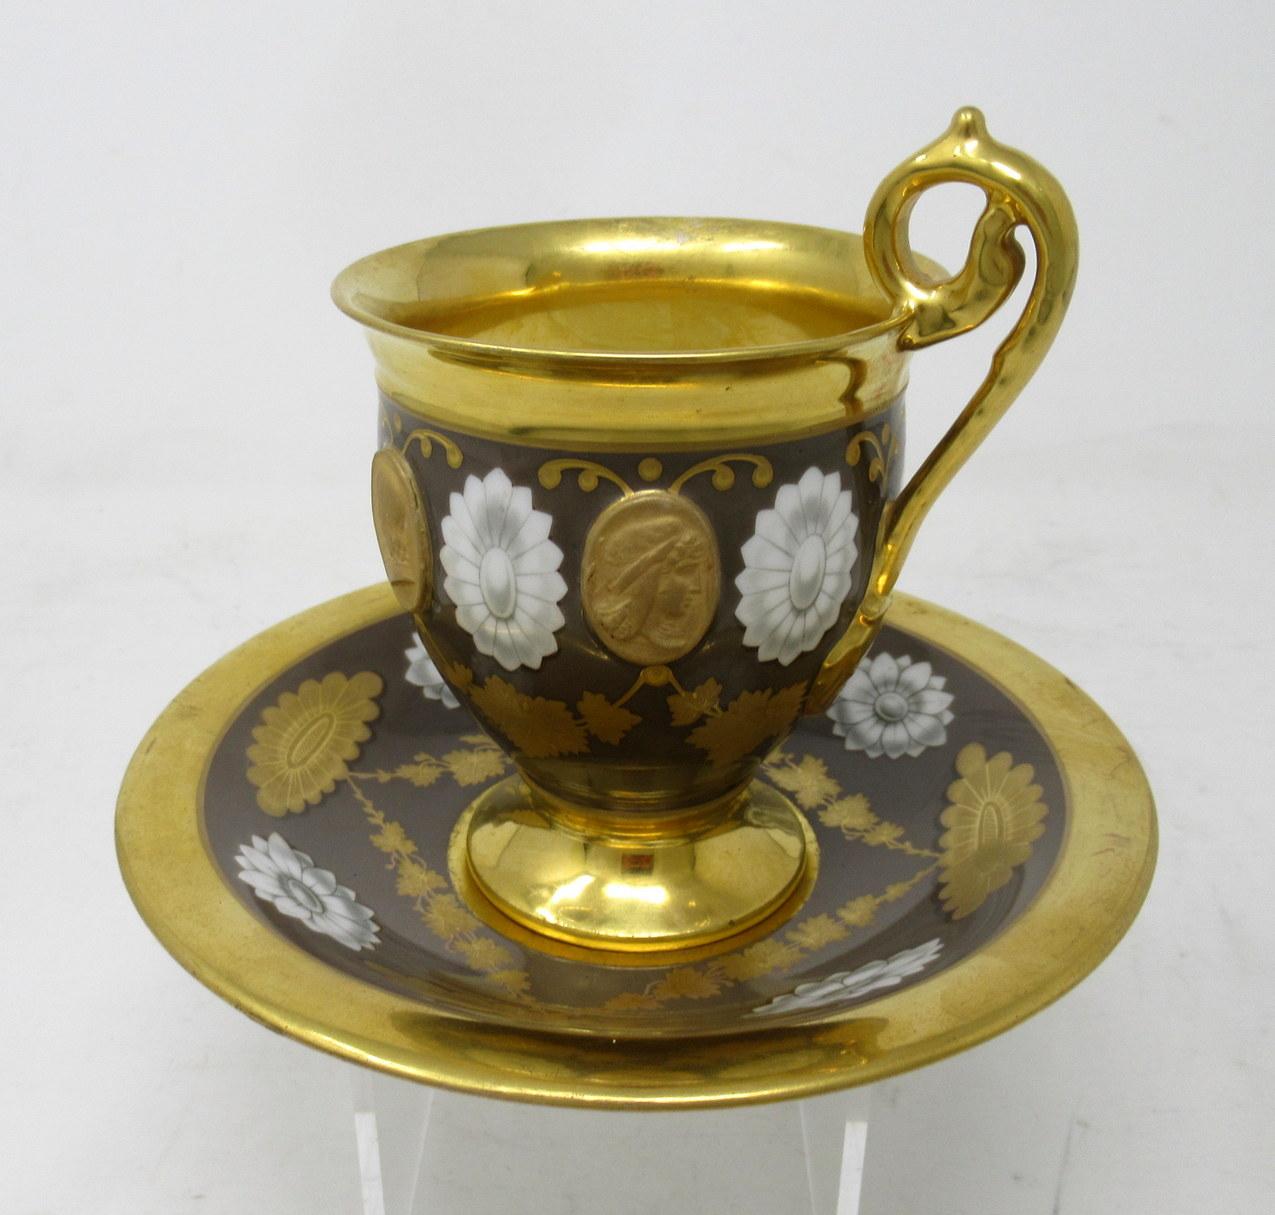 Une exceptionnelle tasse à thé en porcelaine française de Paris, complète avec son dessous de verre d'origine, d'une qualité exceptionnelle. Premier quart du XIXe siècle.

Exquisément peint avec des ovales monochromes classiques alternant avec des